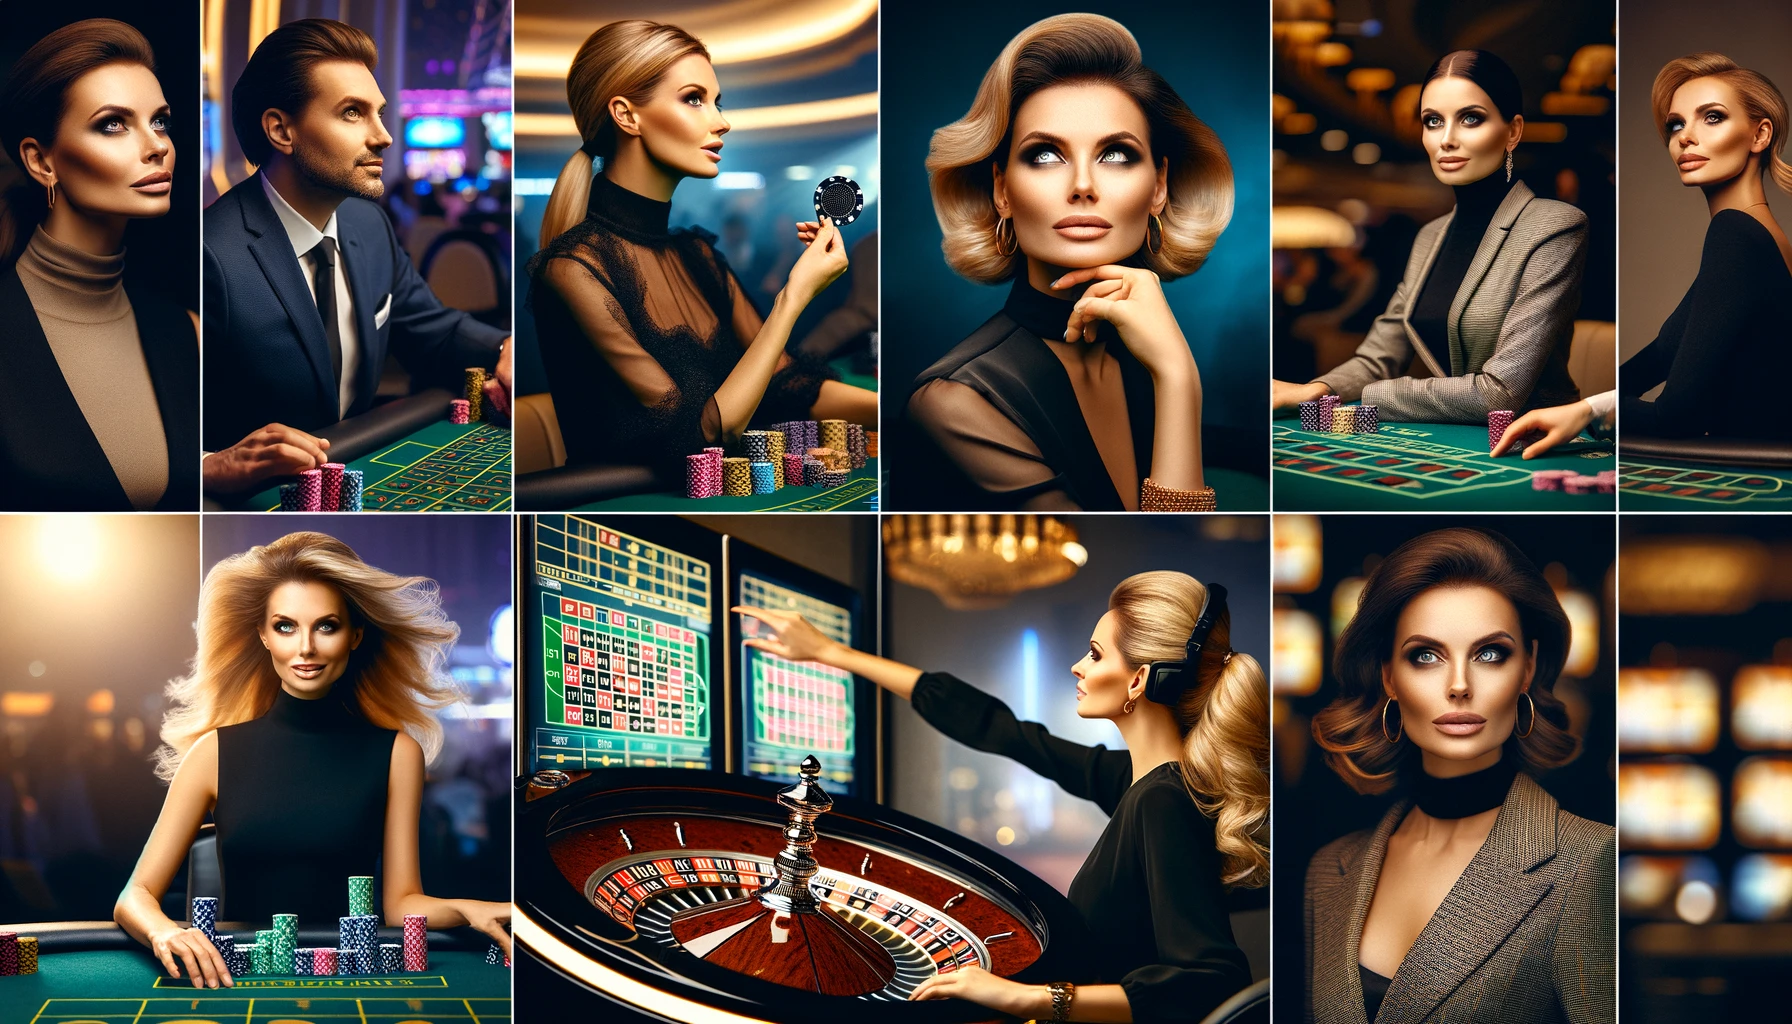 Casino Slots Pay By Phone Bill Cacino.co.uk Gaming